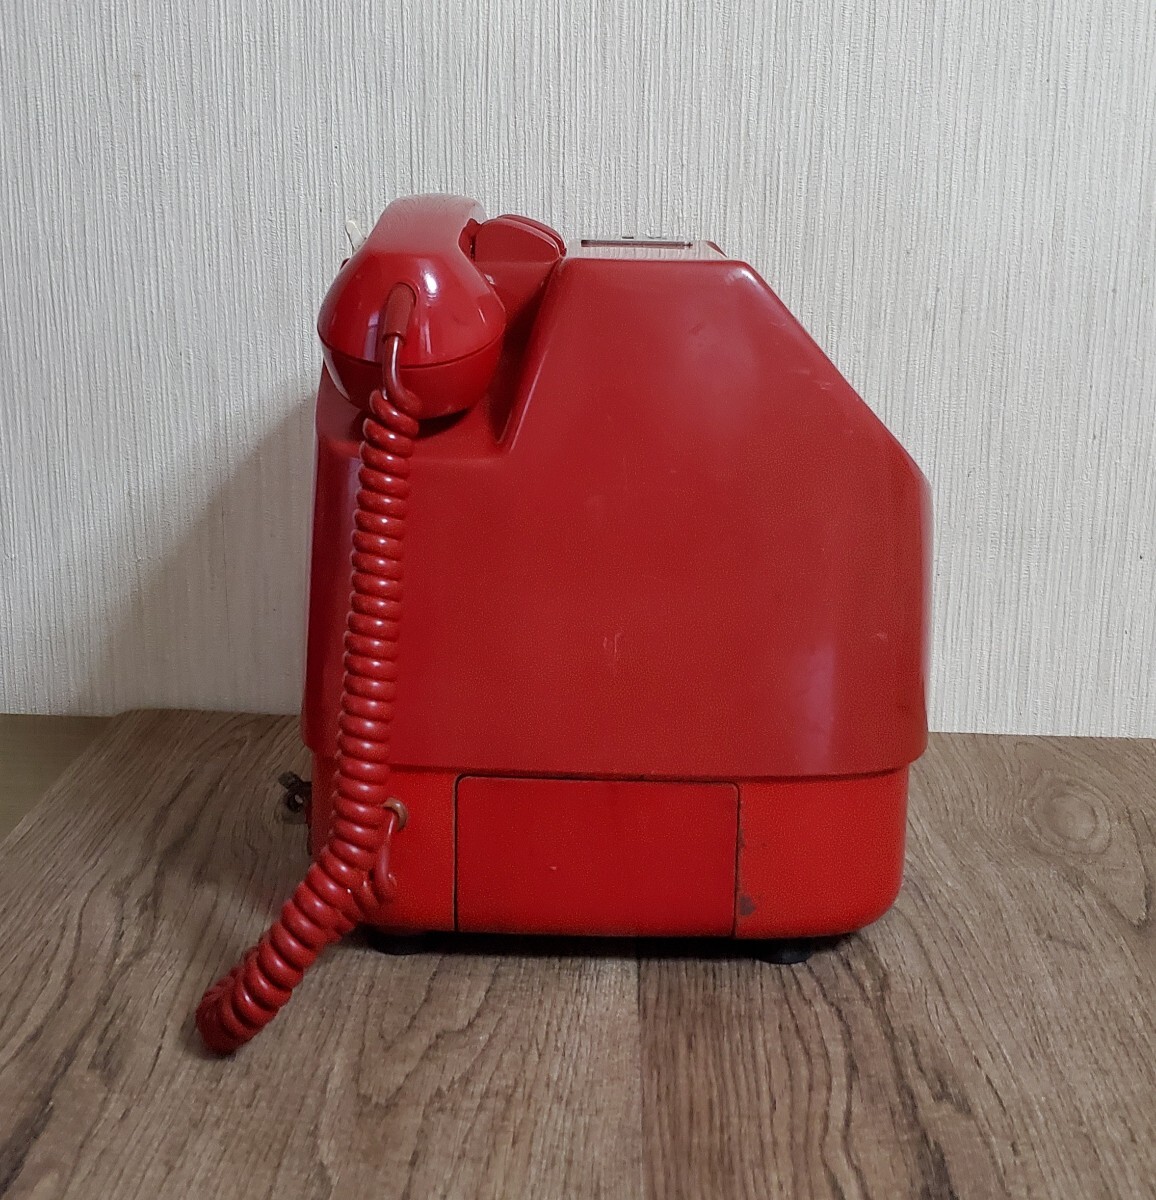 赤電話 田村電機製作所 公衆電話 電話機 レトロ 当時物 昭和 ダイヤル式 アンティーク 貯金箱 ジャンク品 赤電話機 だるま の画像3